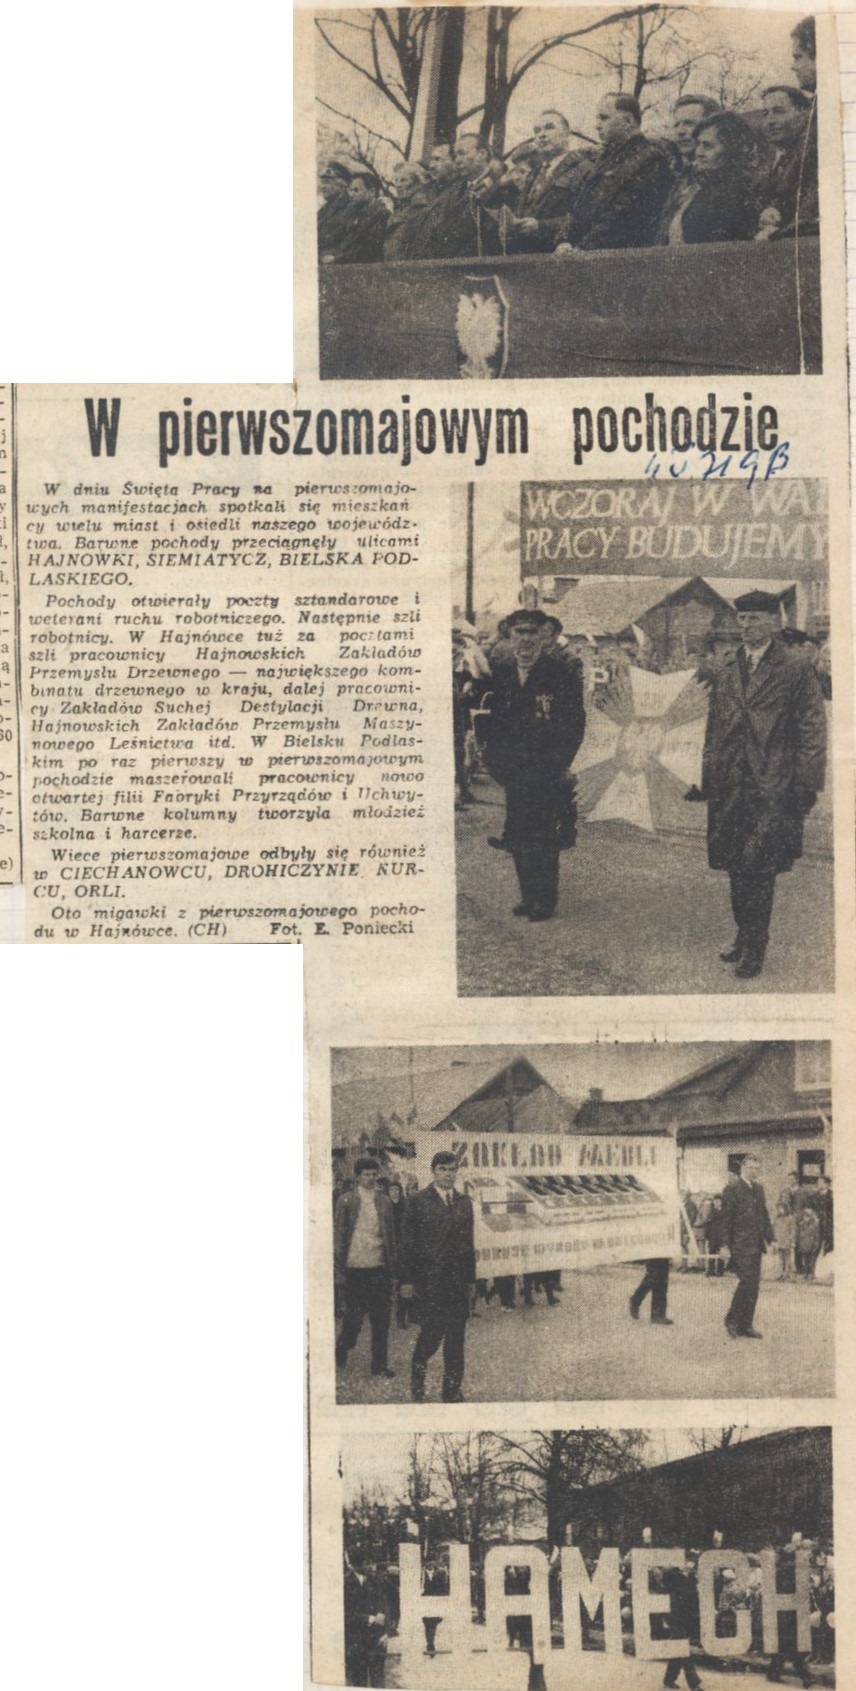 obok tekstu artykułu: dwaj mężczyźni trzymający godło Polski